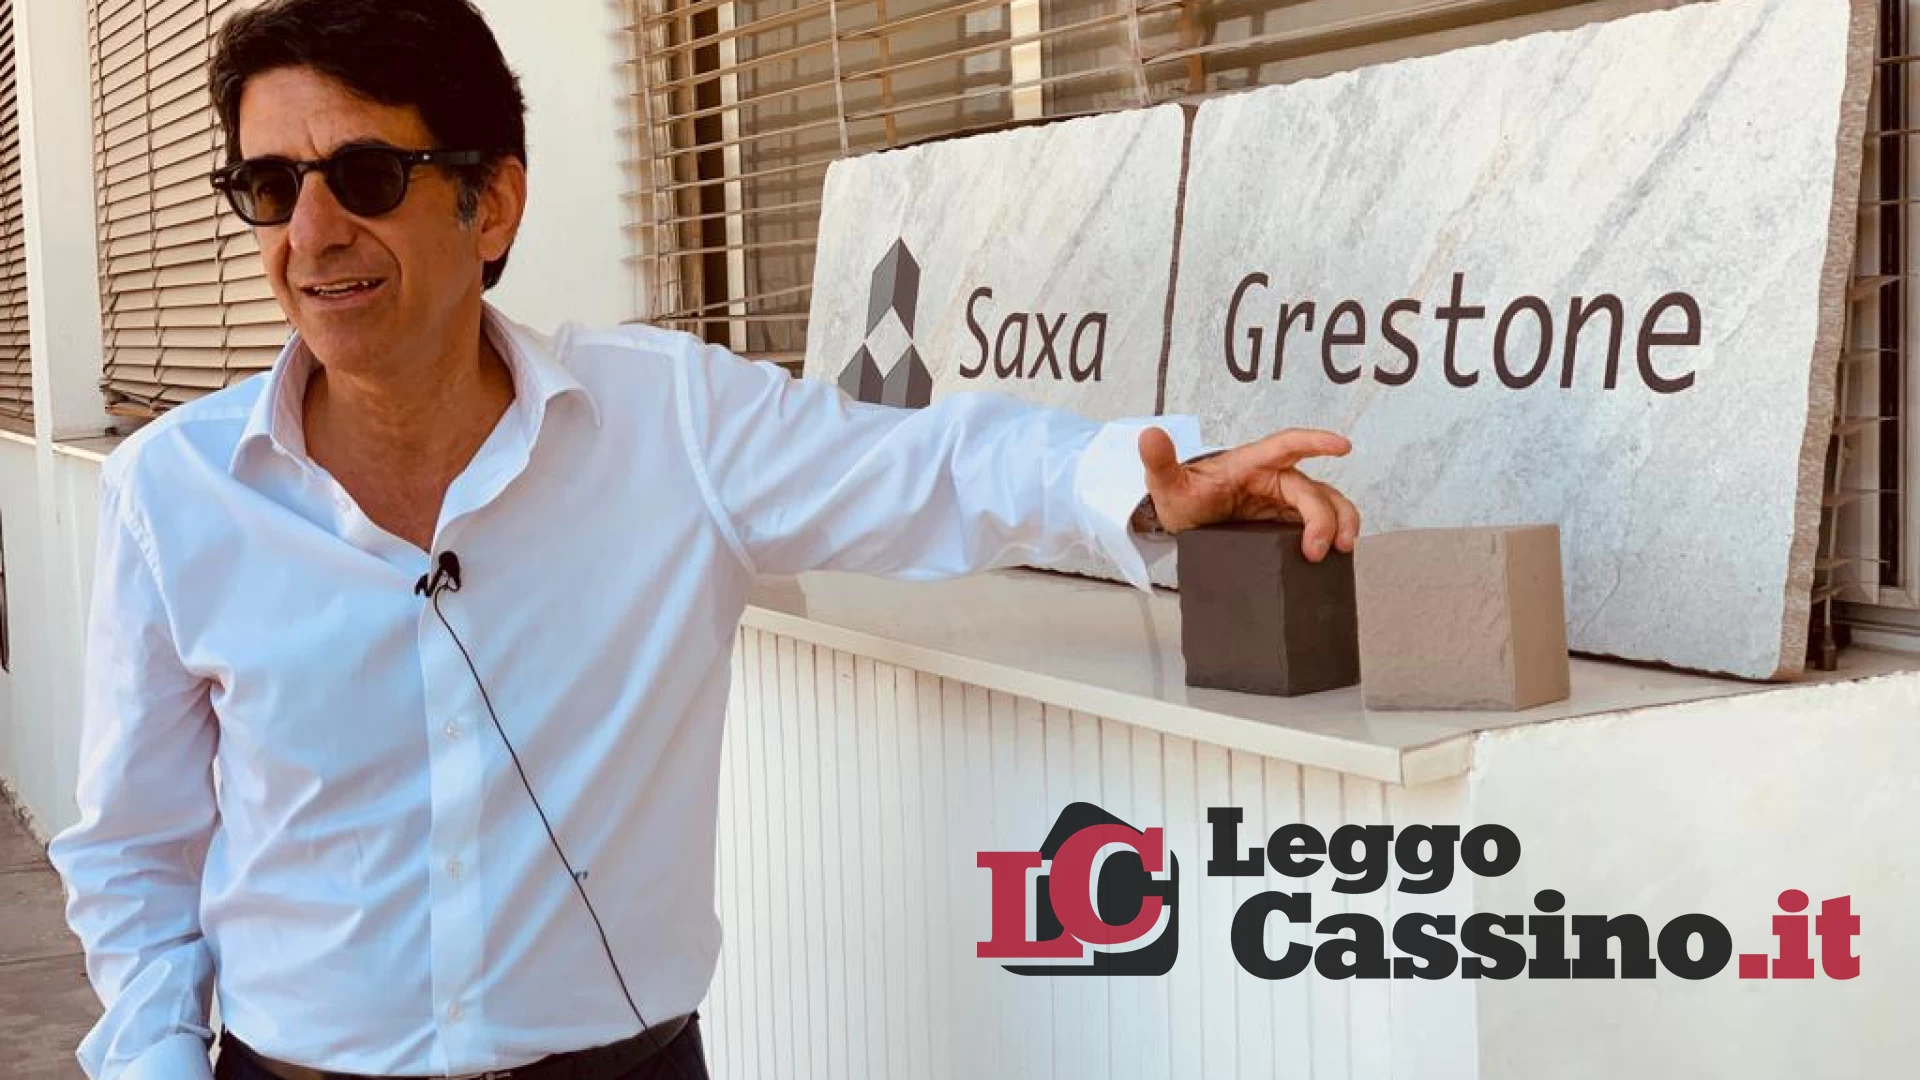 “Adesso la dirigenza di Saxa Gres è chiamata a dare risposte chiare sul futuro dell’azienda"